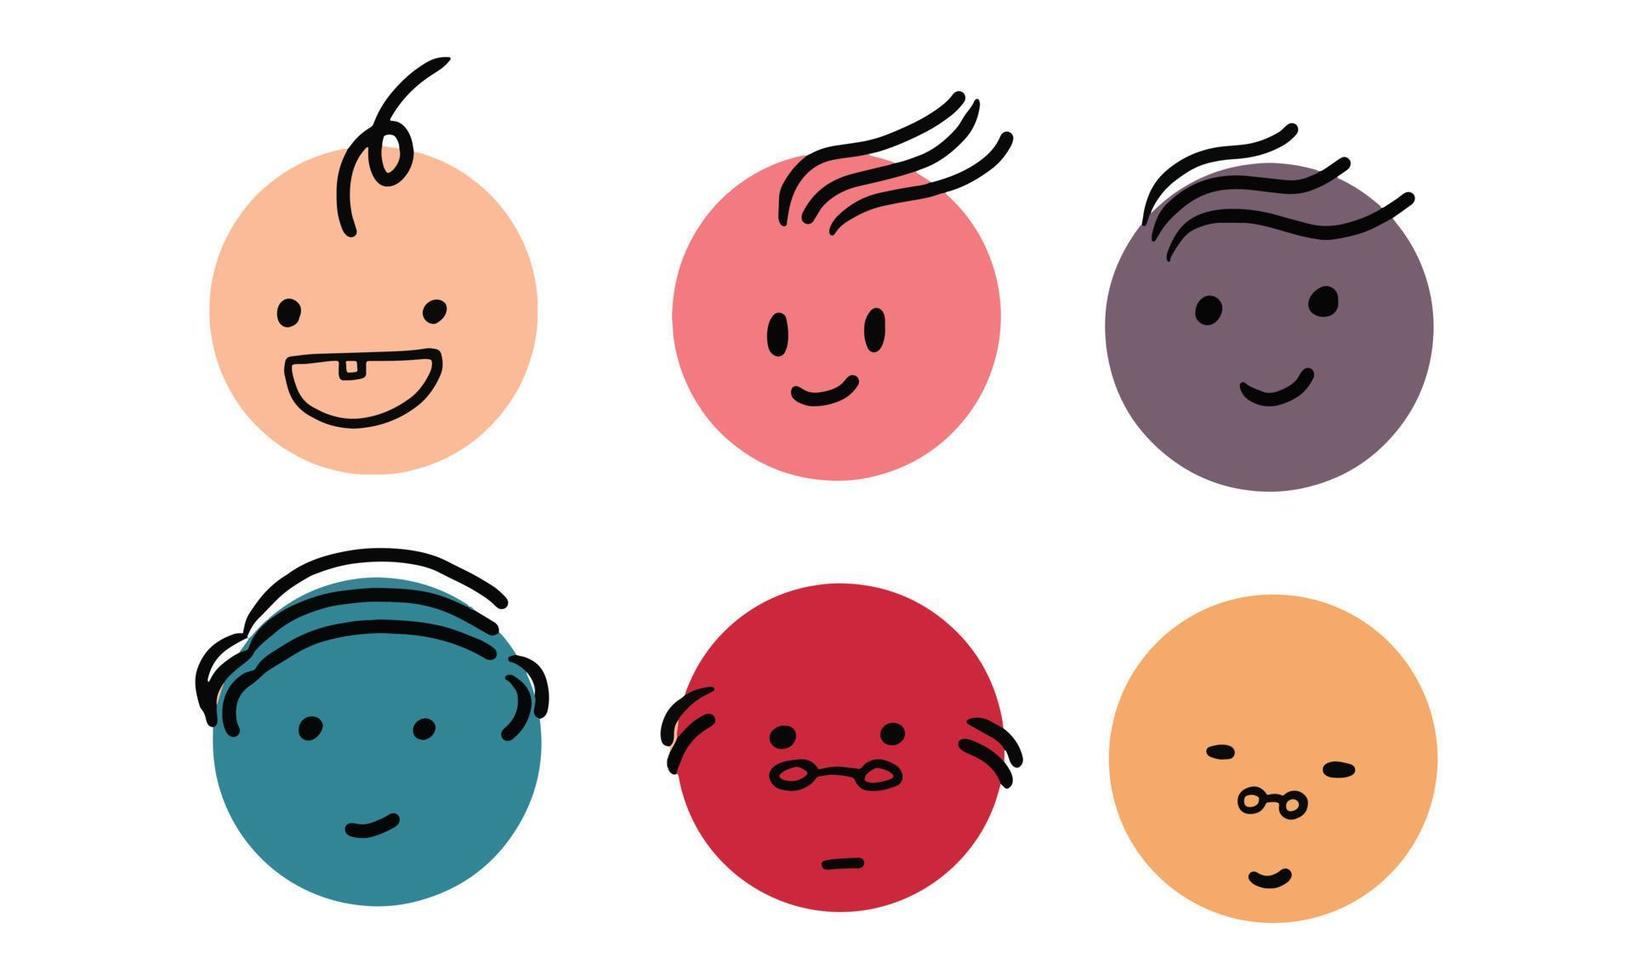 süße Icons oder Emoticons repräsentieren den menschlichen Lebenszyklus. Zeichnen einer lustigen Illustration des Menschen von Baby, Kleinkind, Kind, Teenager, Erwachsener und Alt. vektor